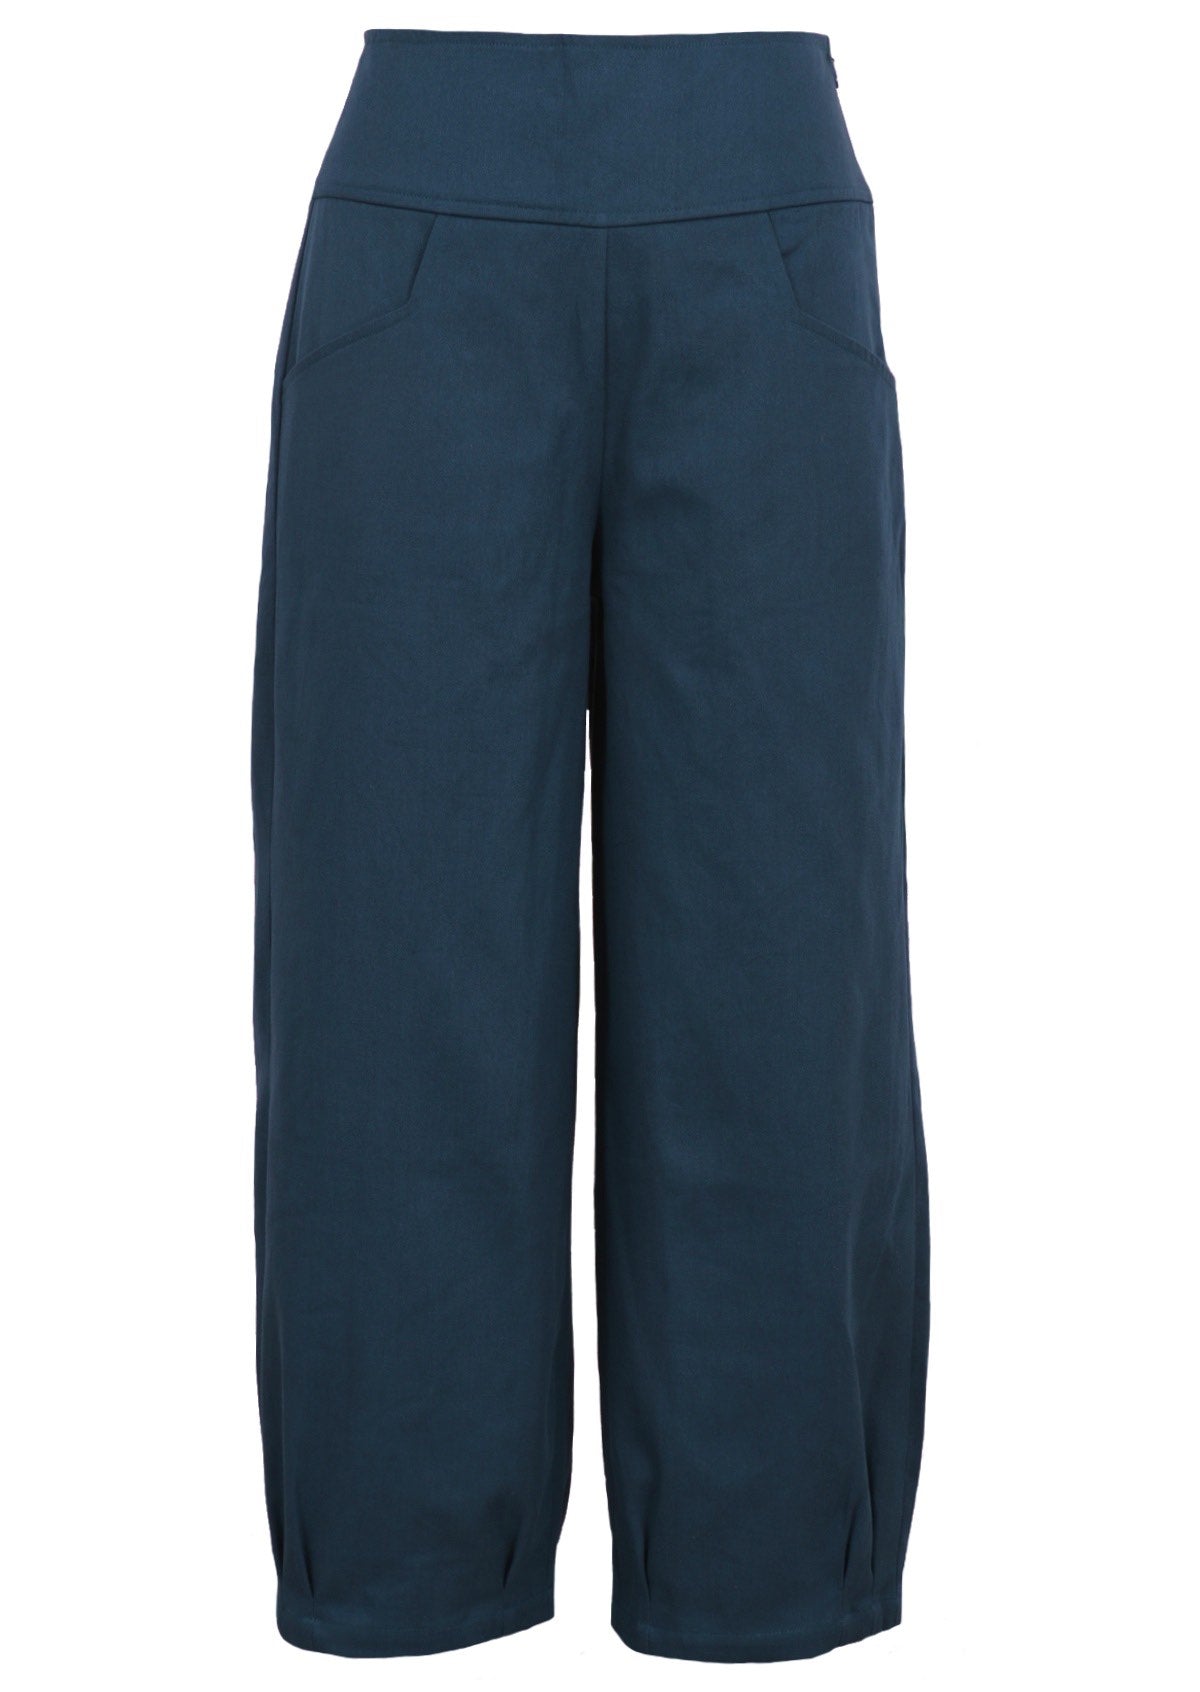 Nova Pants Majolica Blue cotton drill front